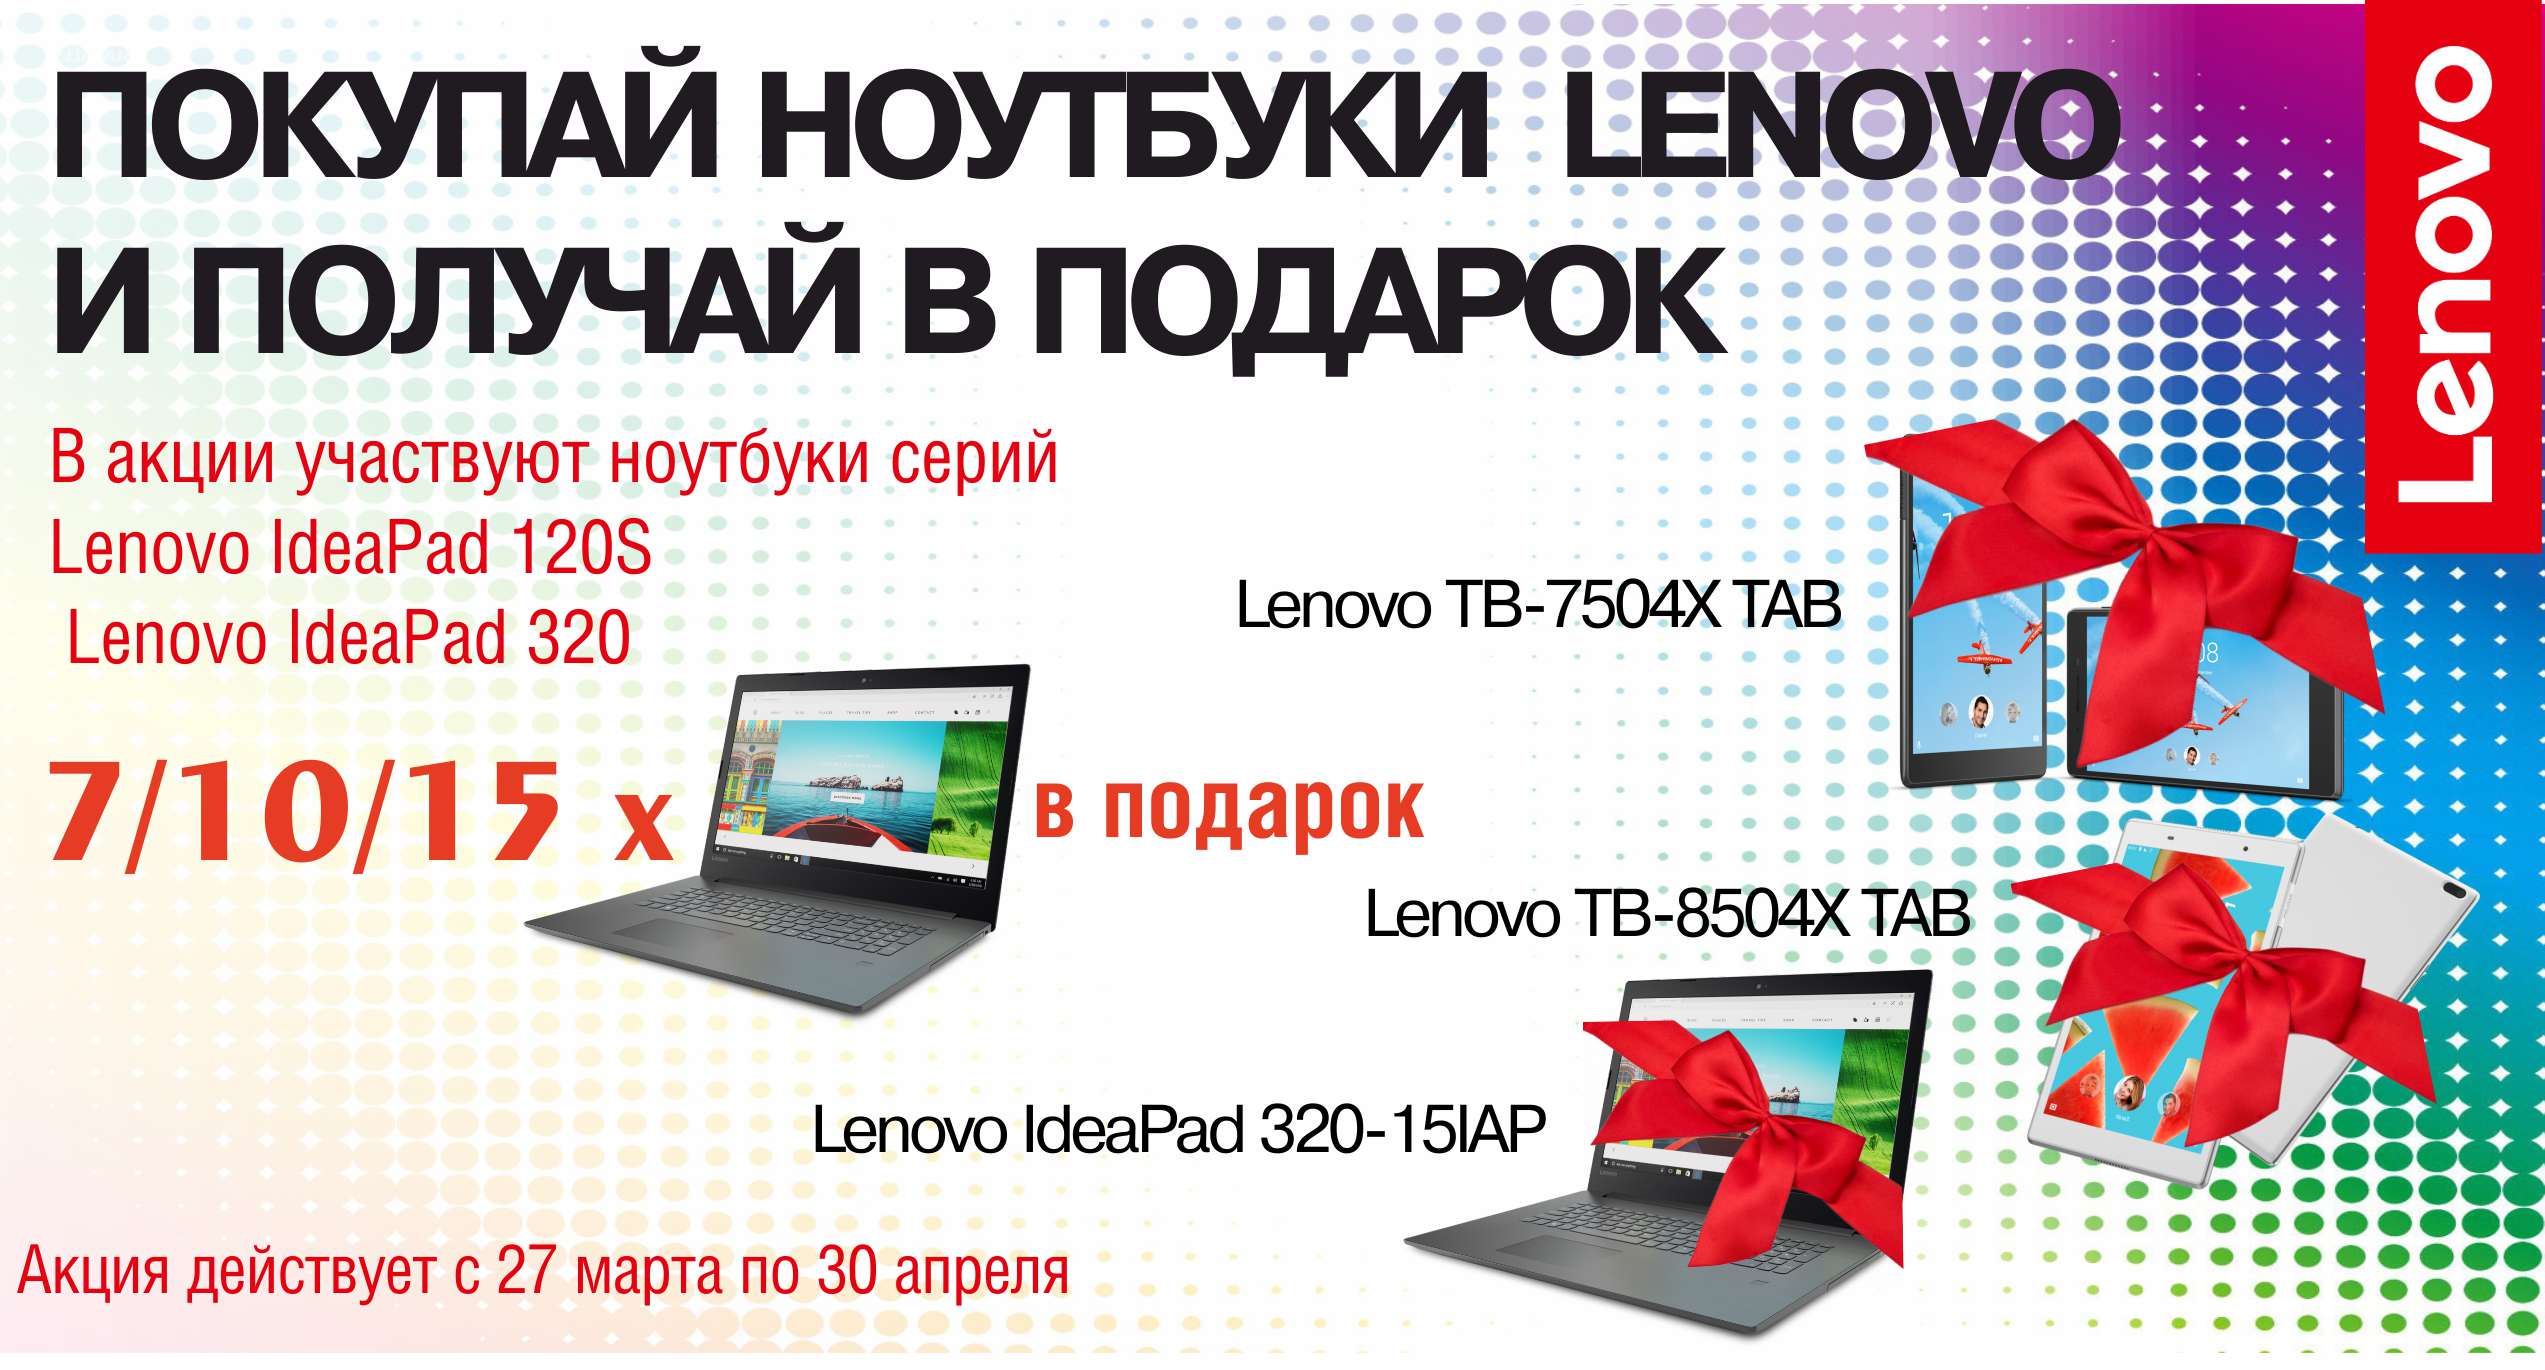 Получай в подарок Lenovo за покупки ноутбуков Lenovo серий IdeaPad 120S  и IdeaPad 320